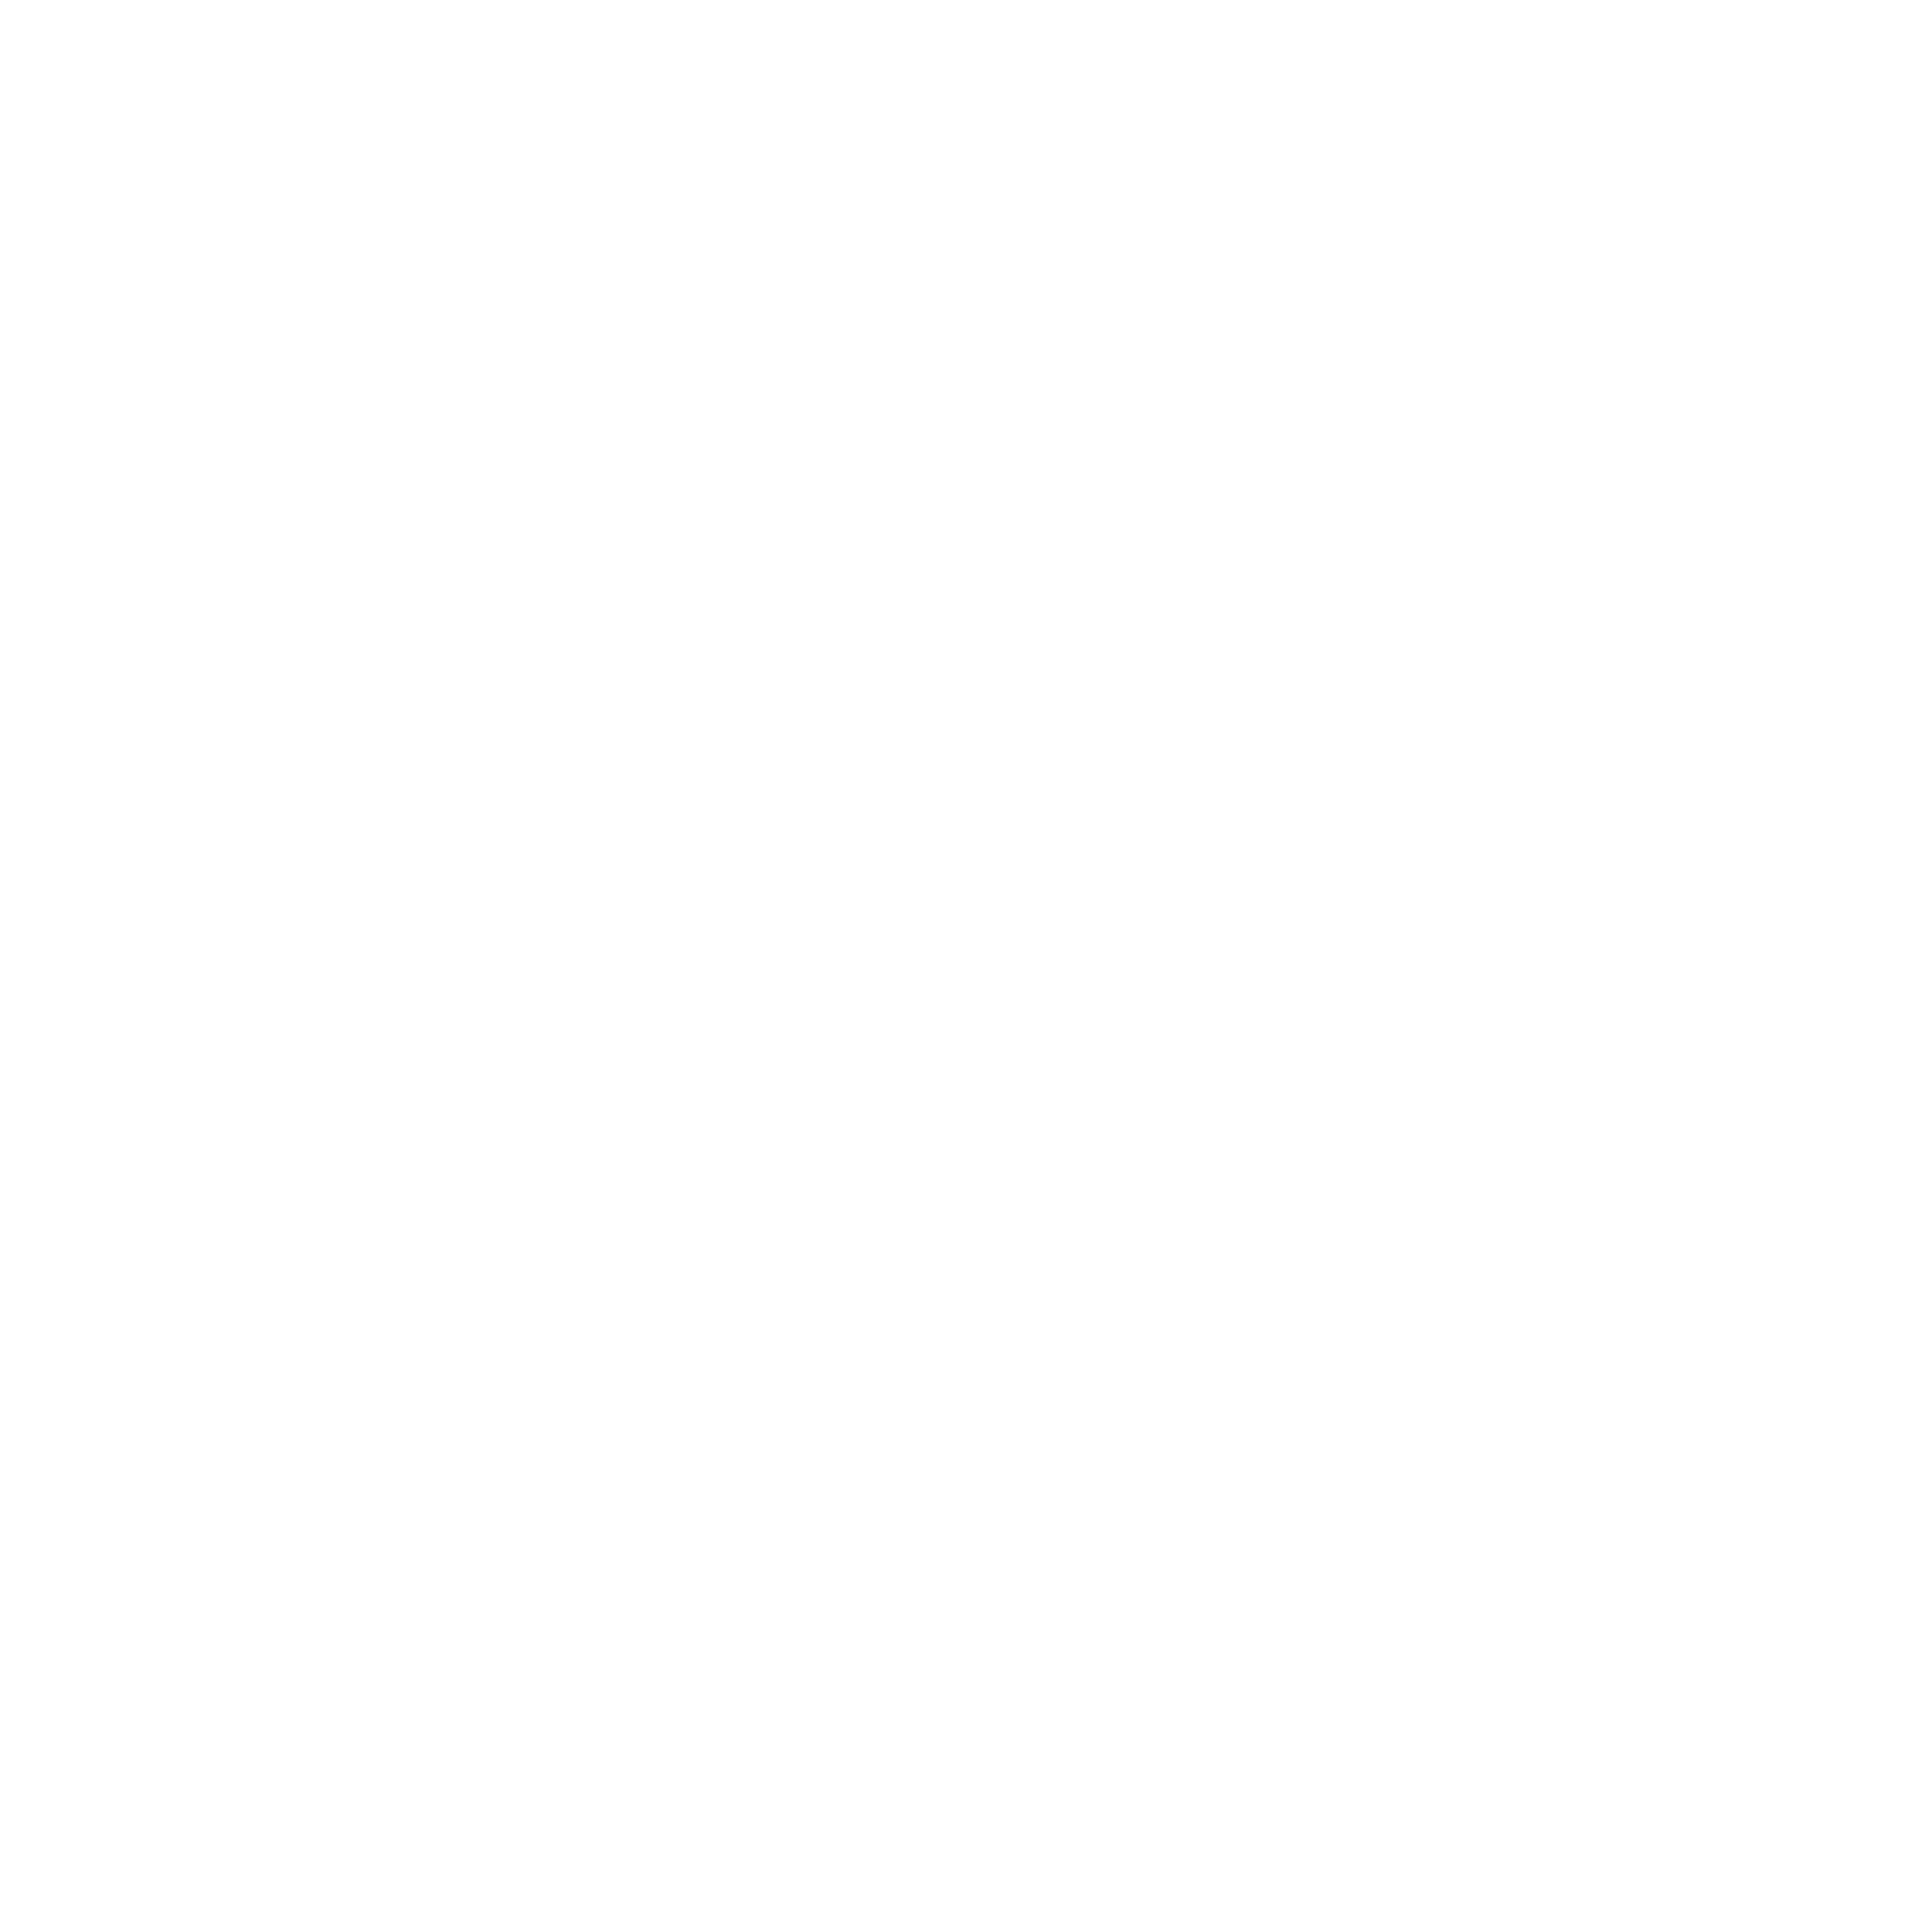 icona Spotify